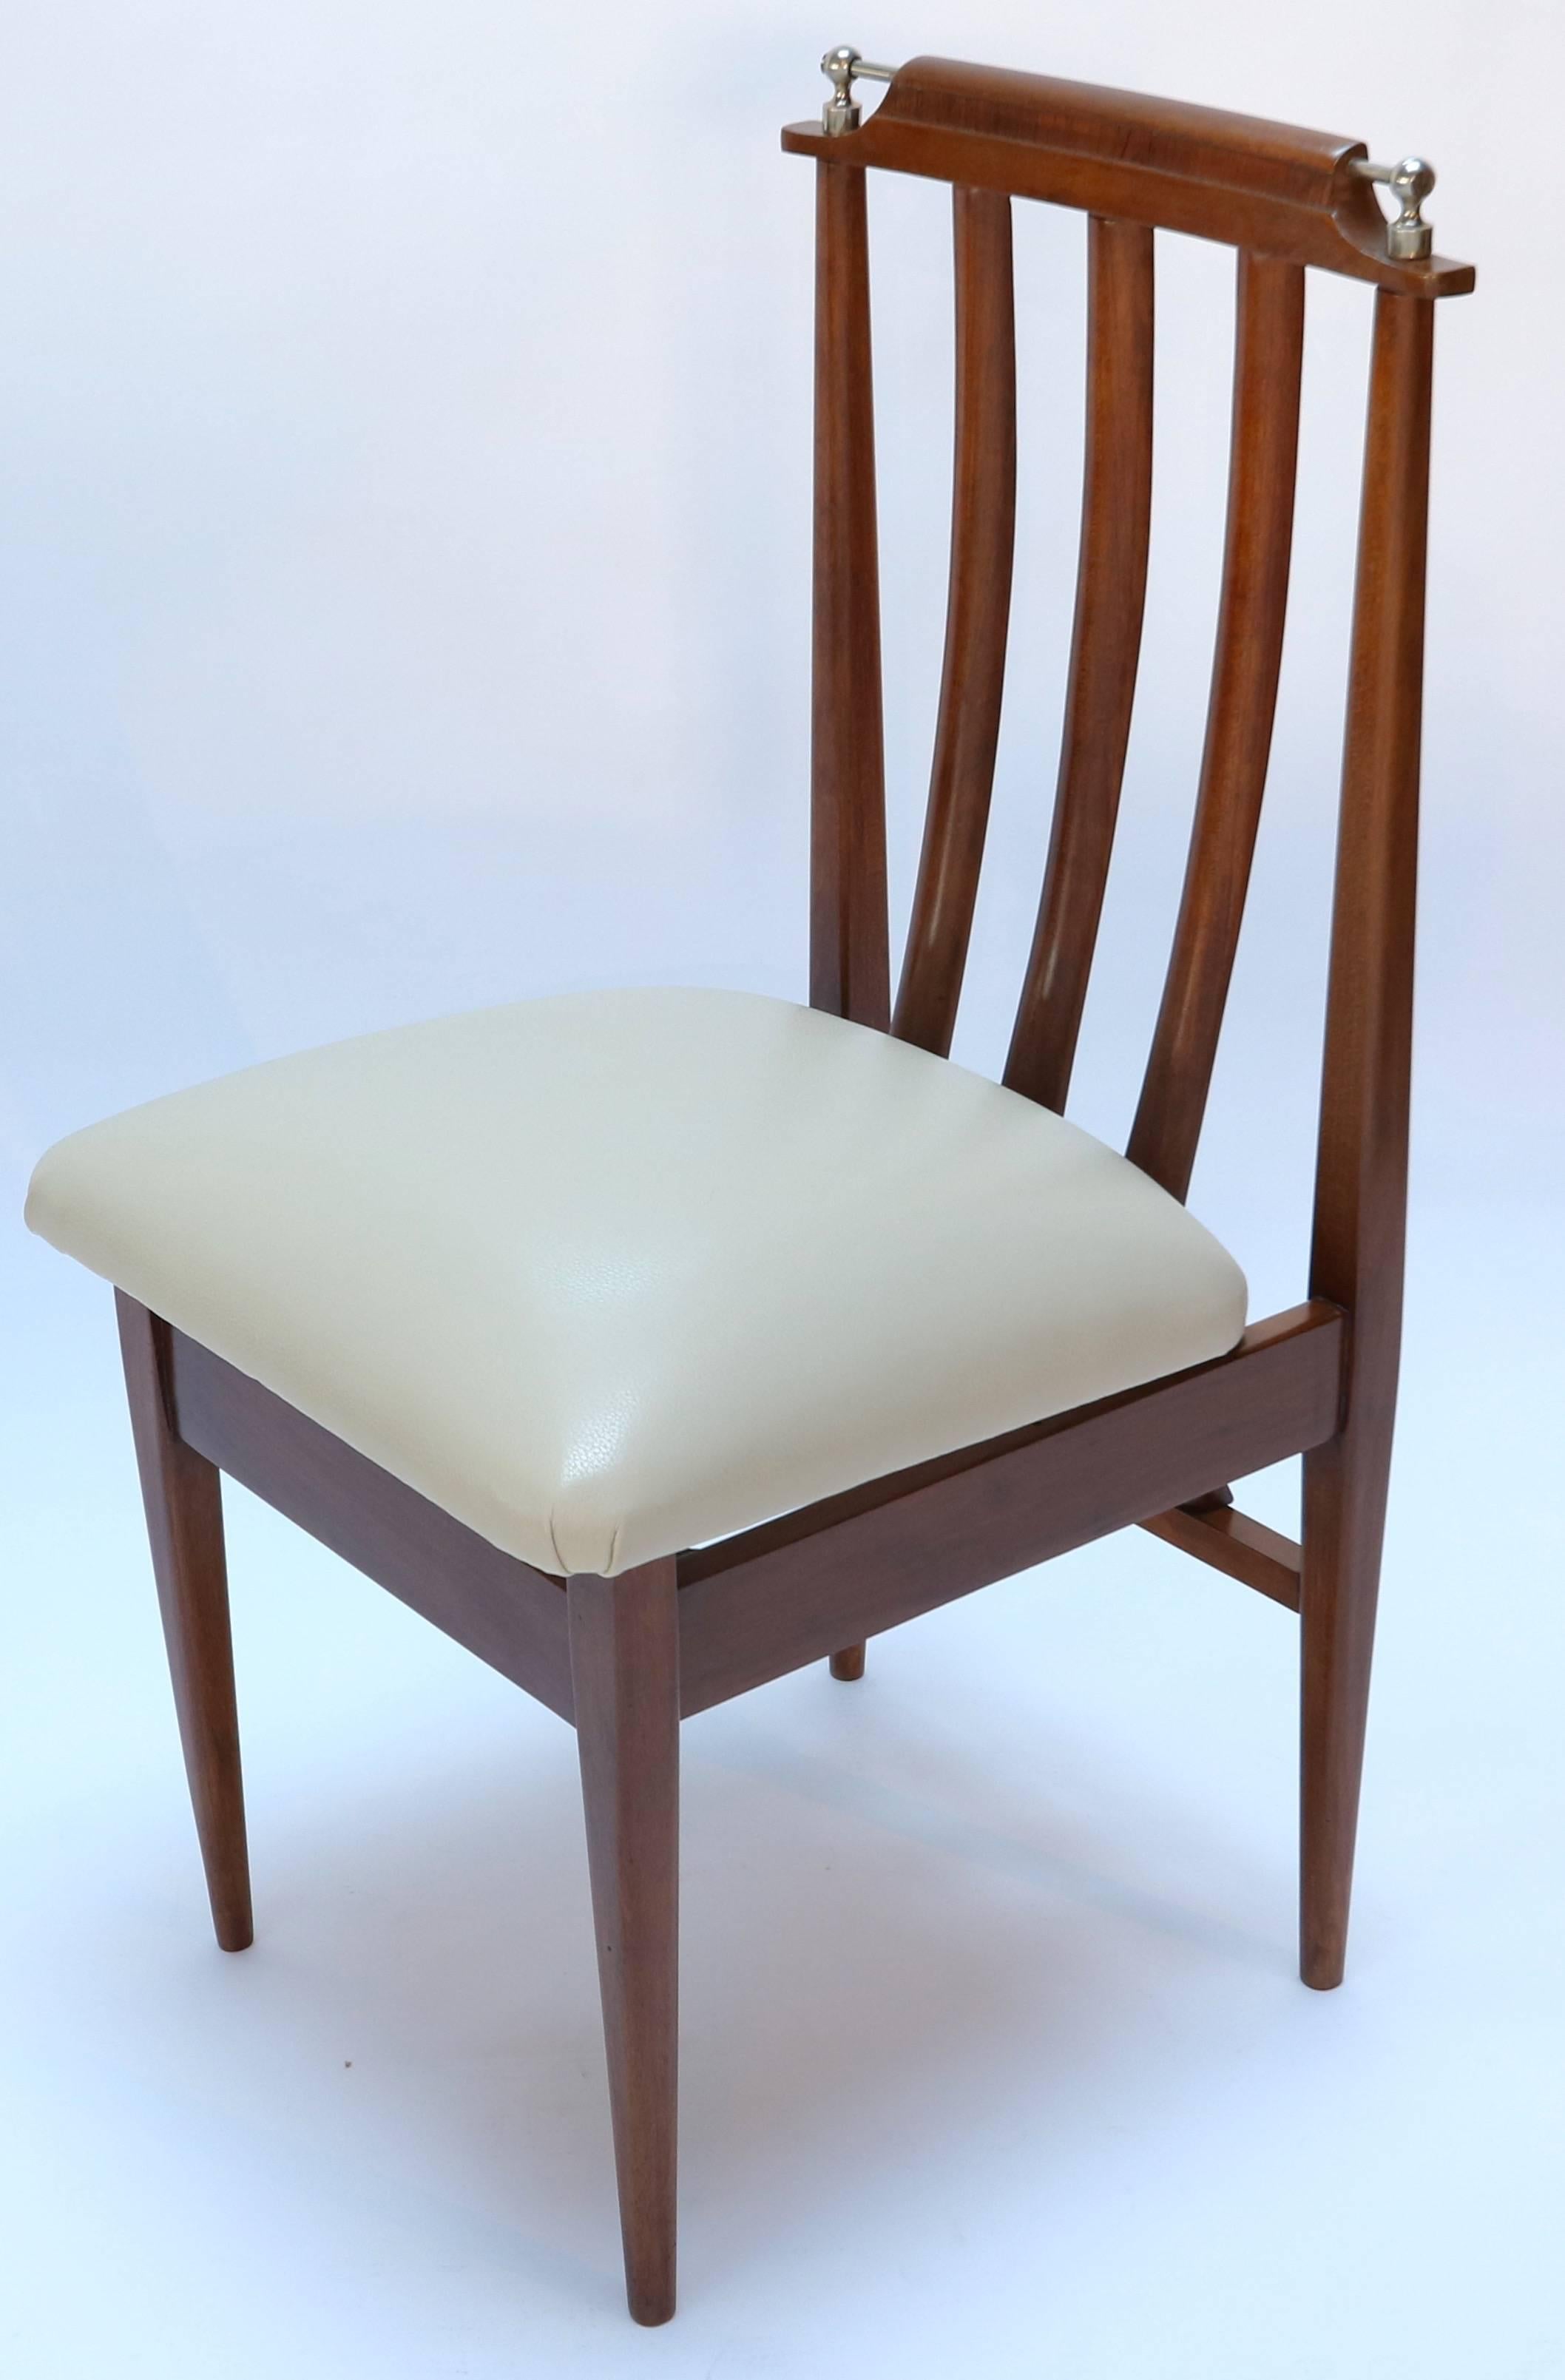 Ensemble de six chaises de salle à manger argentines des années 1960 en bois de pitiribi avec des coins chromés, recouvertes de cuir beige.